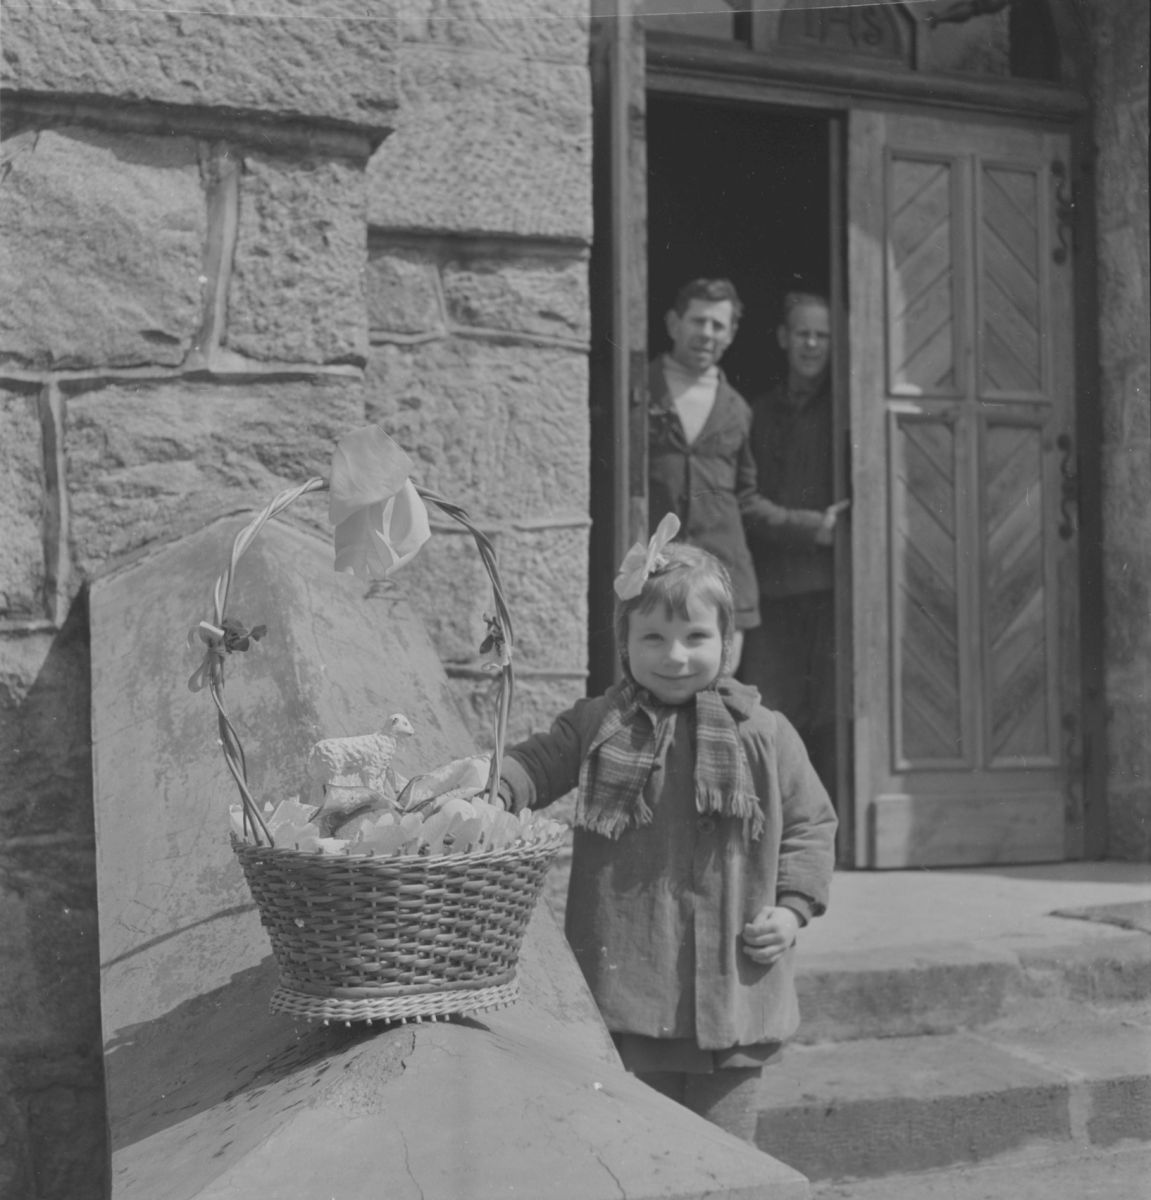 Wielkanoc w Białce Wielka Sobota. Dziewczynka stojąca przed wejściem do kościoła z koszyczkiem wypełnionym pokarmami wielkanocnymi zwanymi "święcelinami".